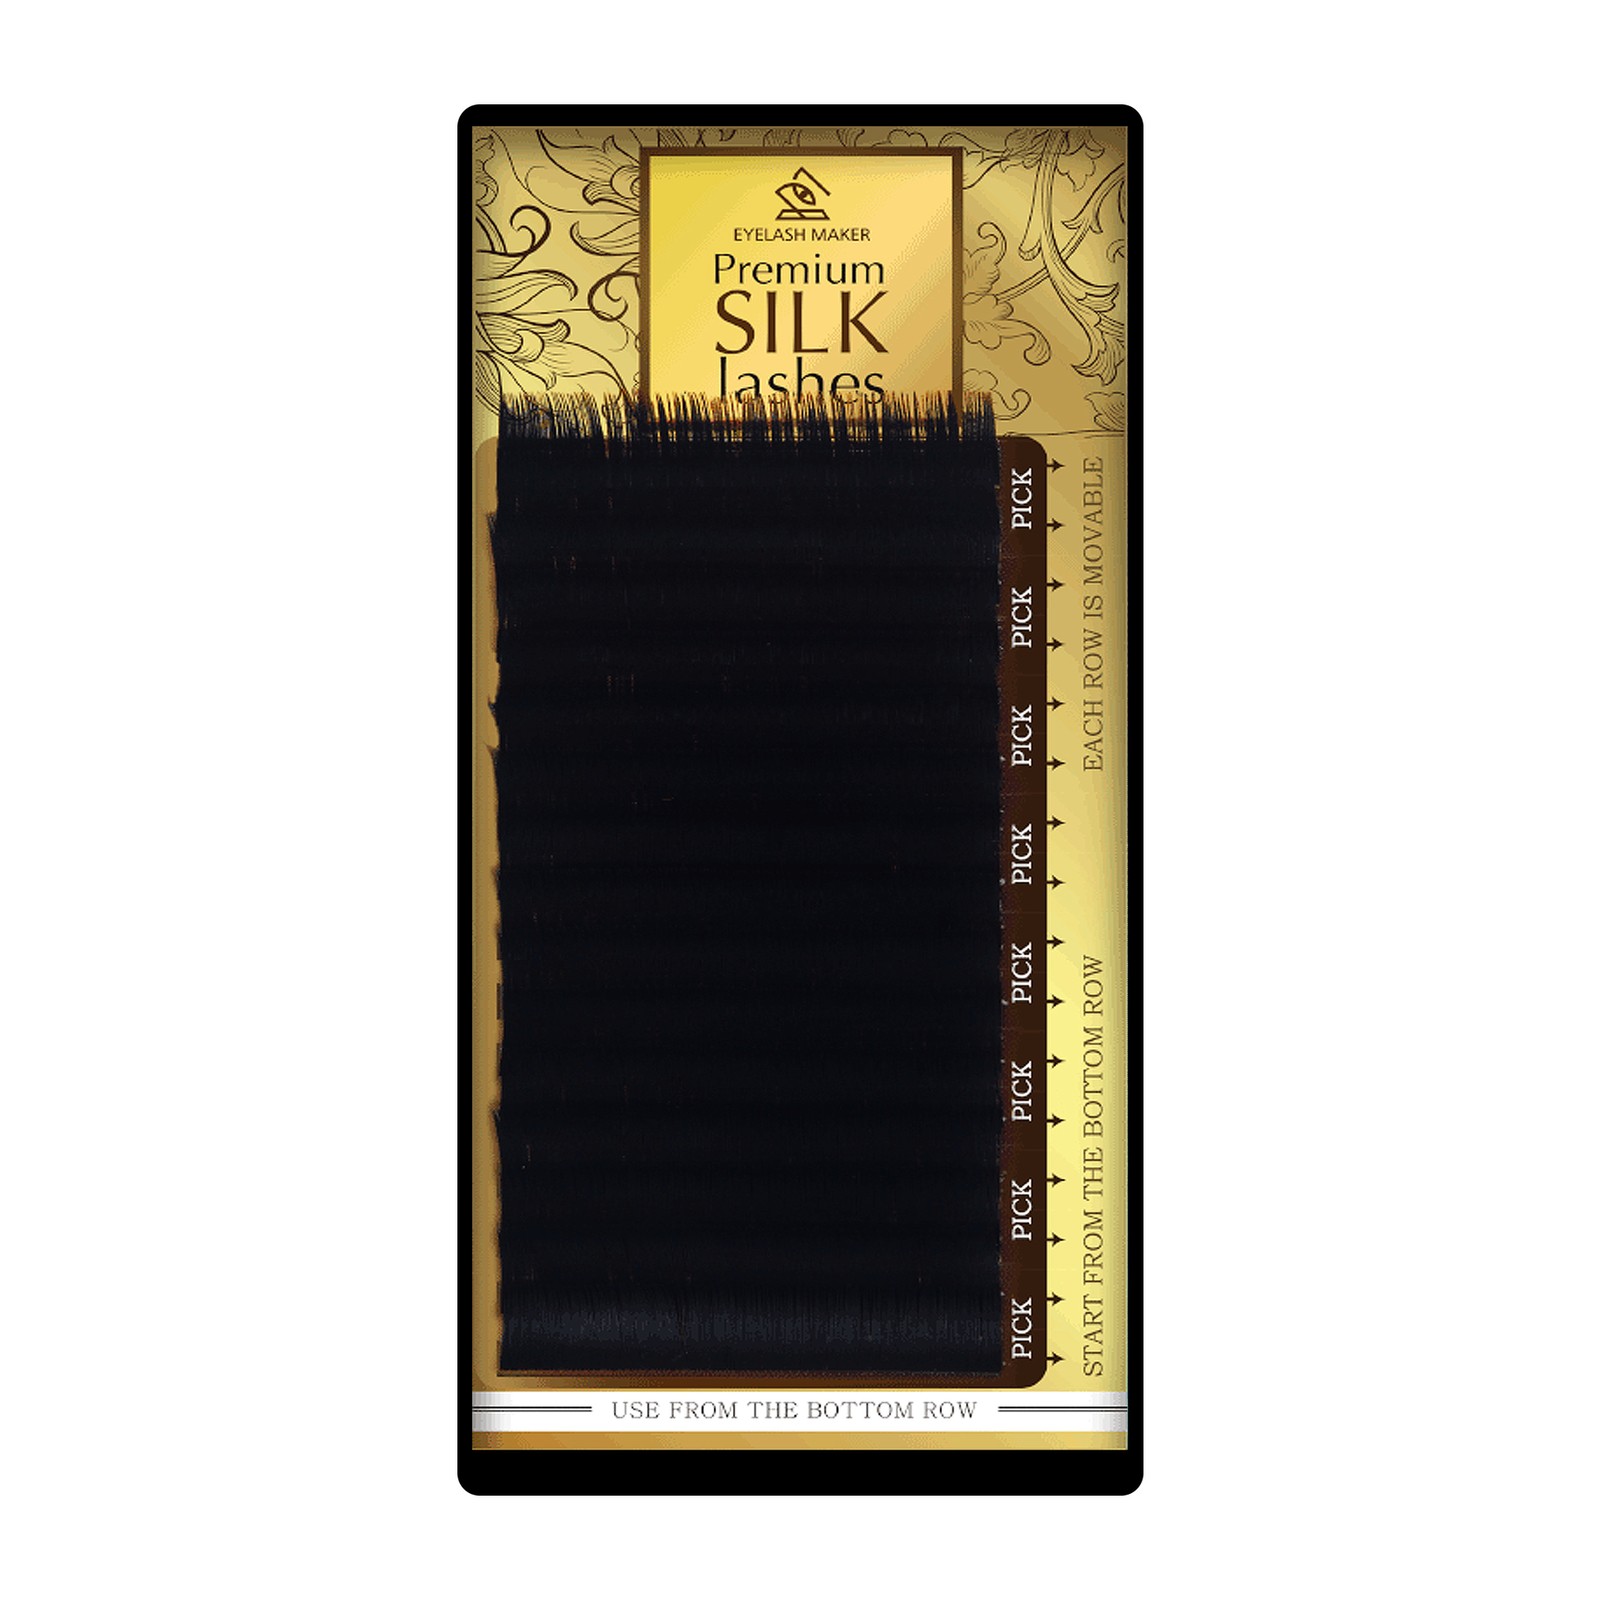 Premium Silk Lashes - 14mm, C, 0.15mm